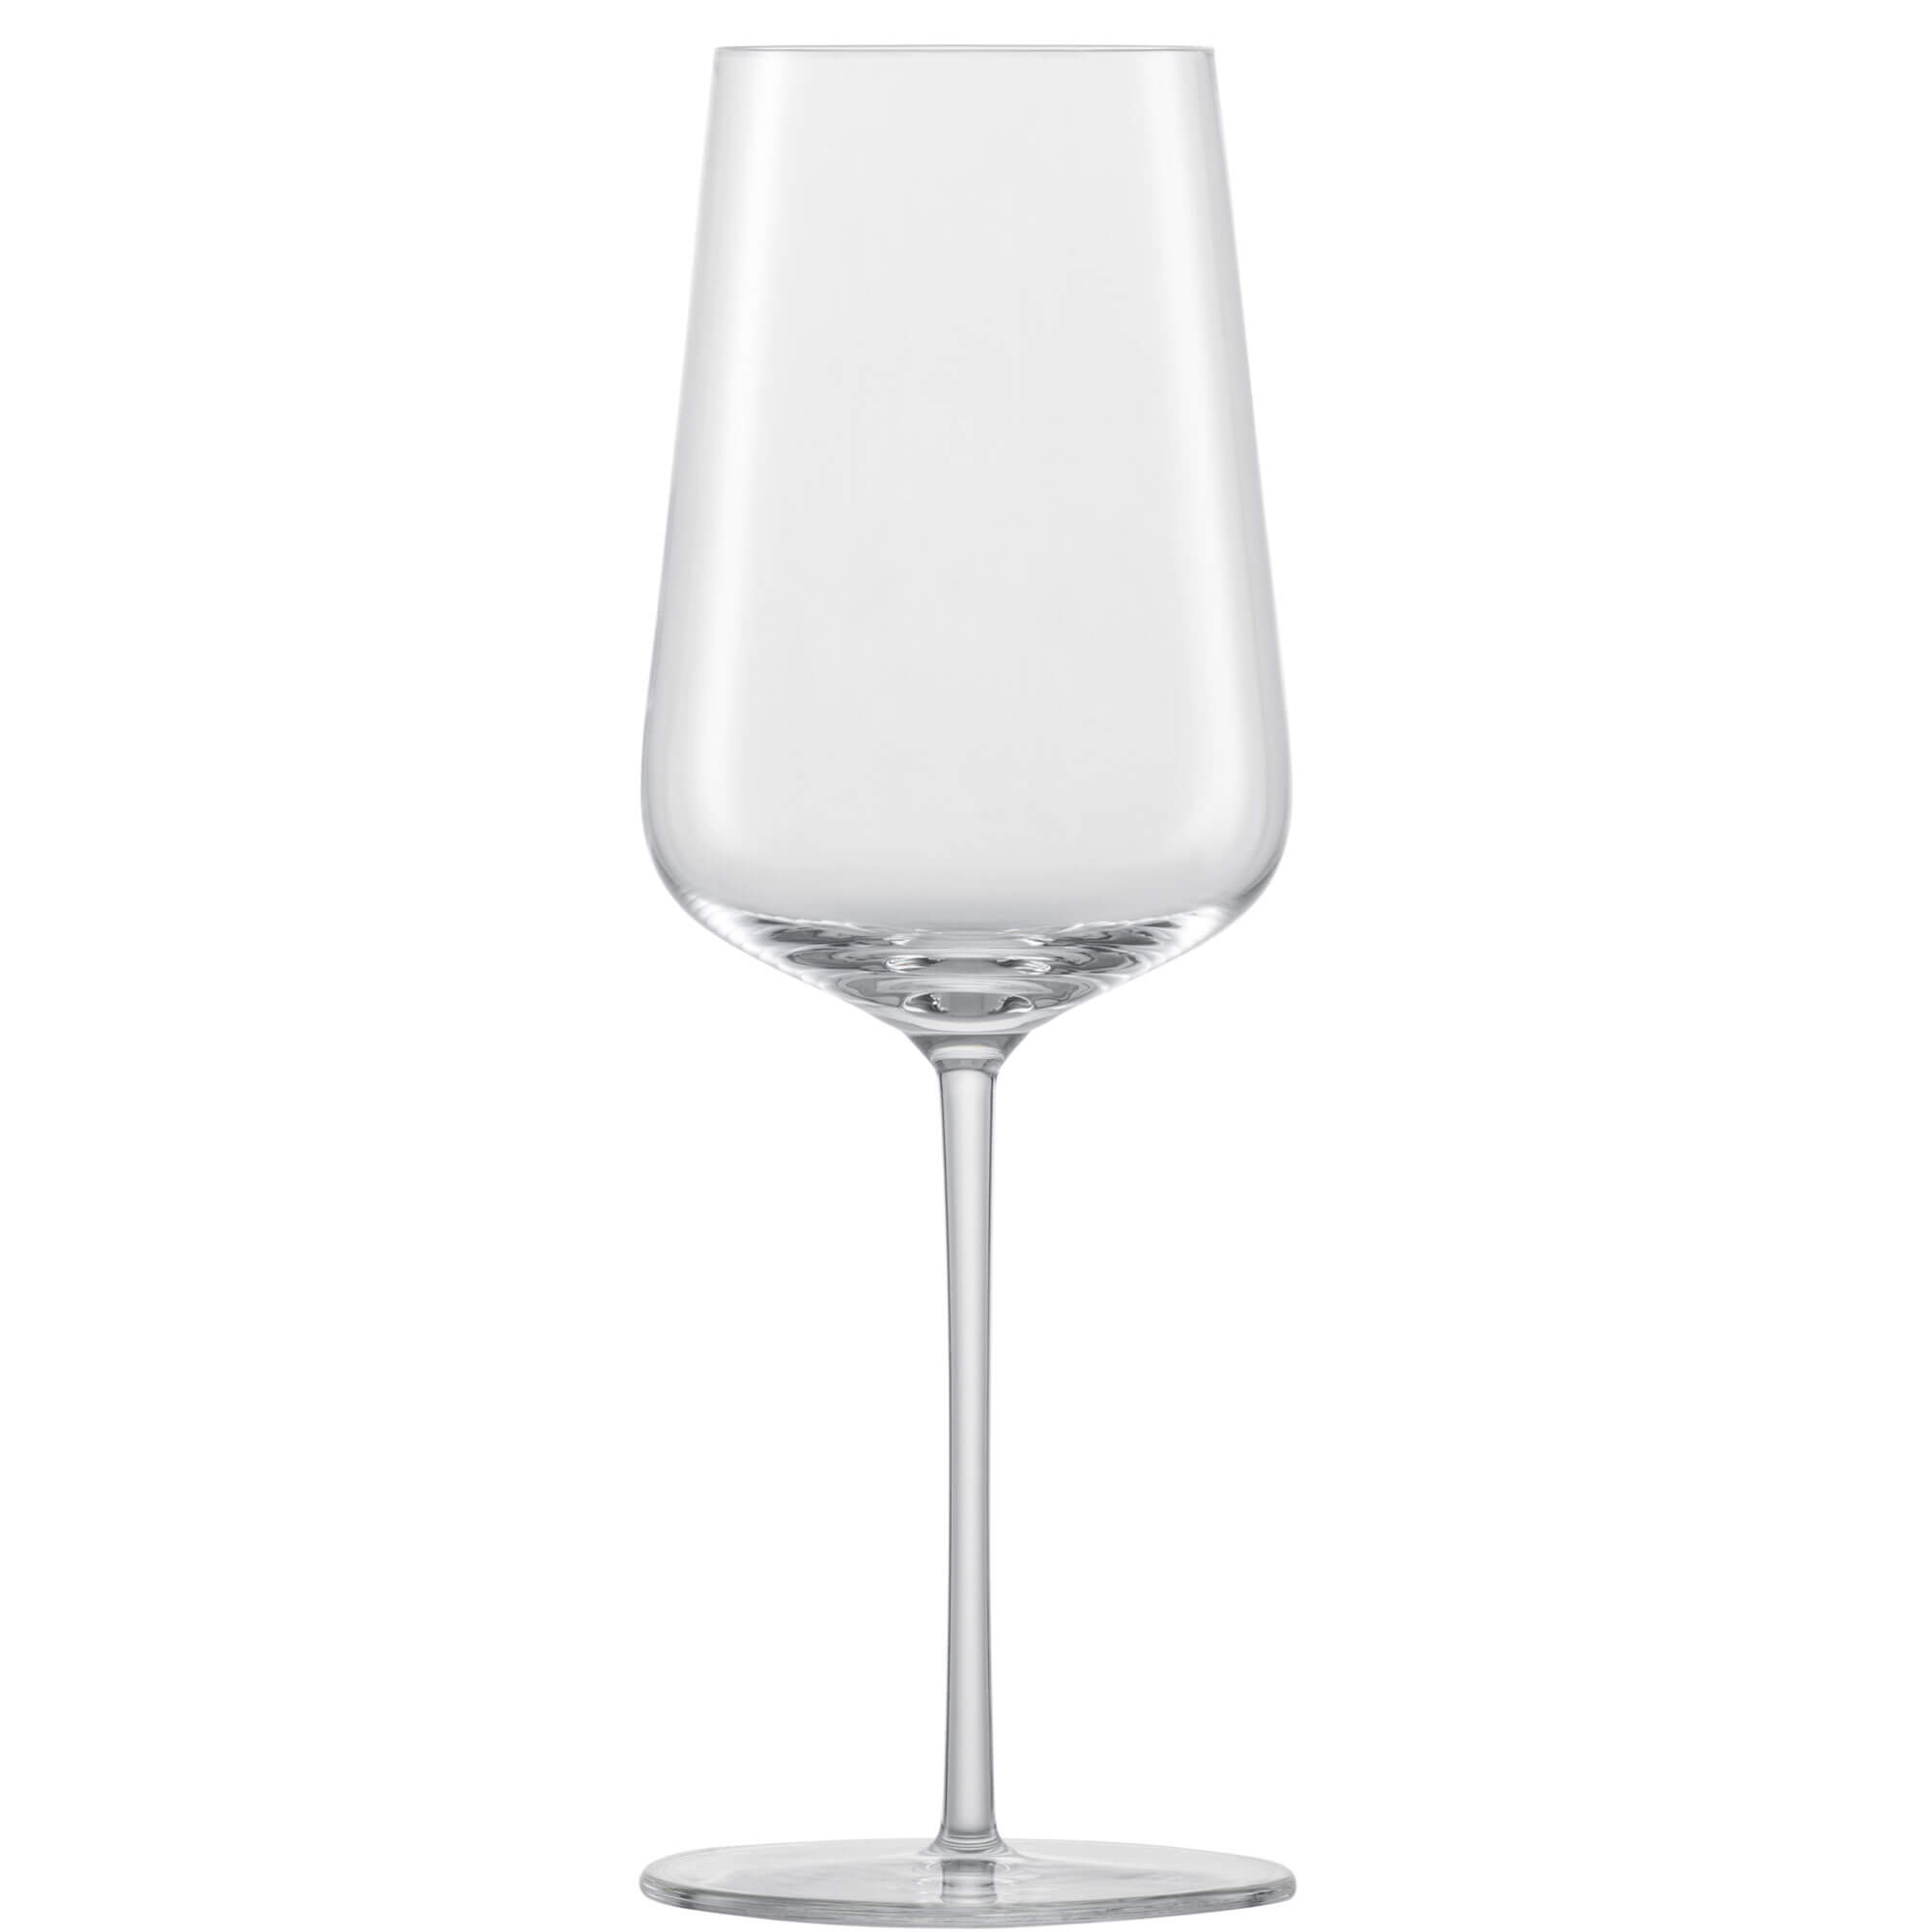 Chardonnayglas Verbelle, Zwiesel Glas - 487ml (1 Stk.)